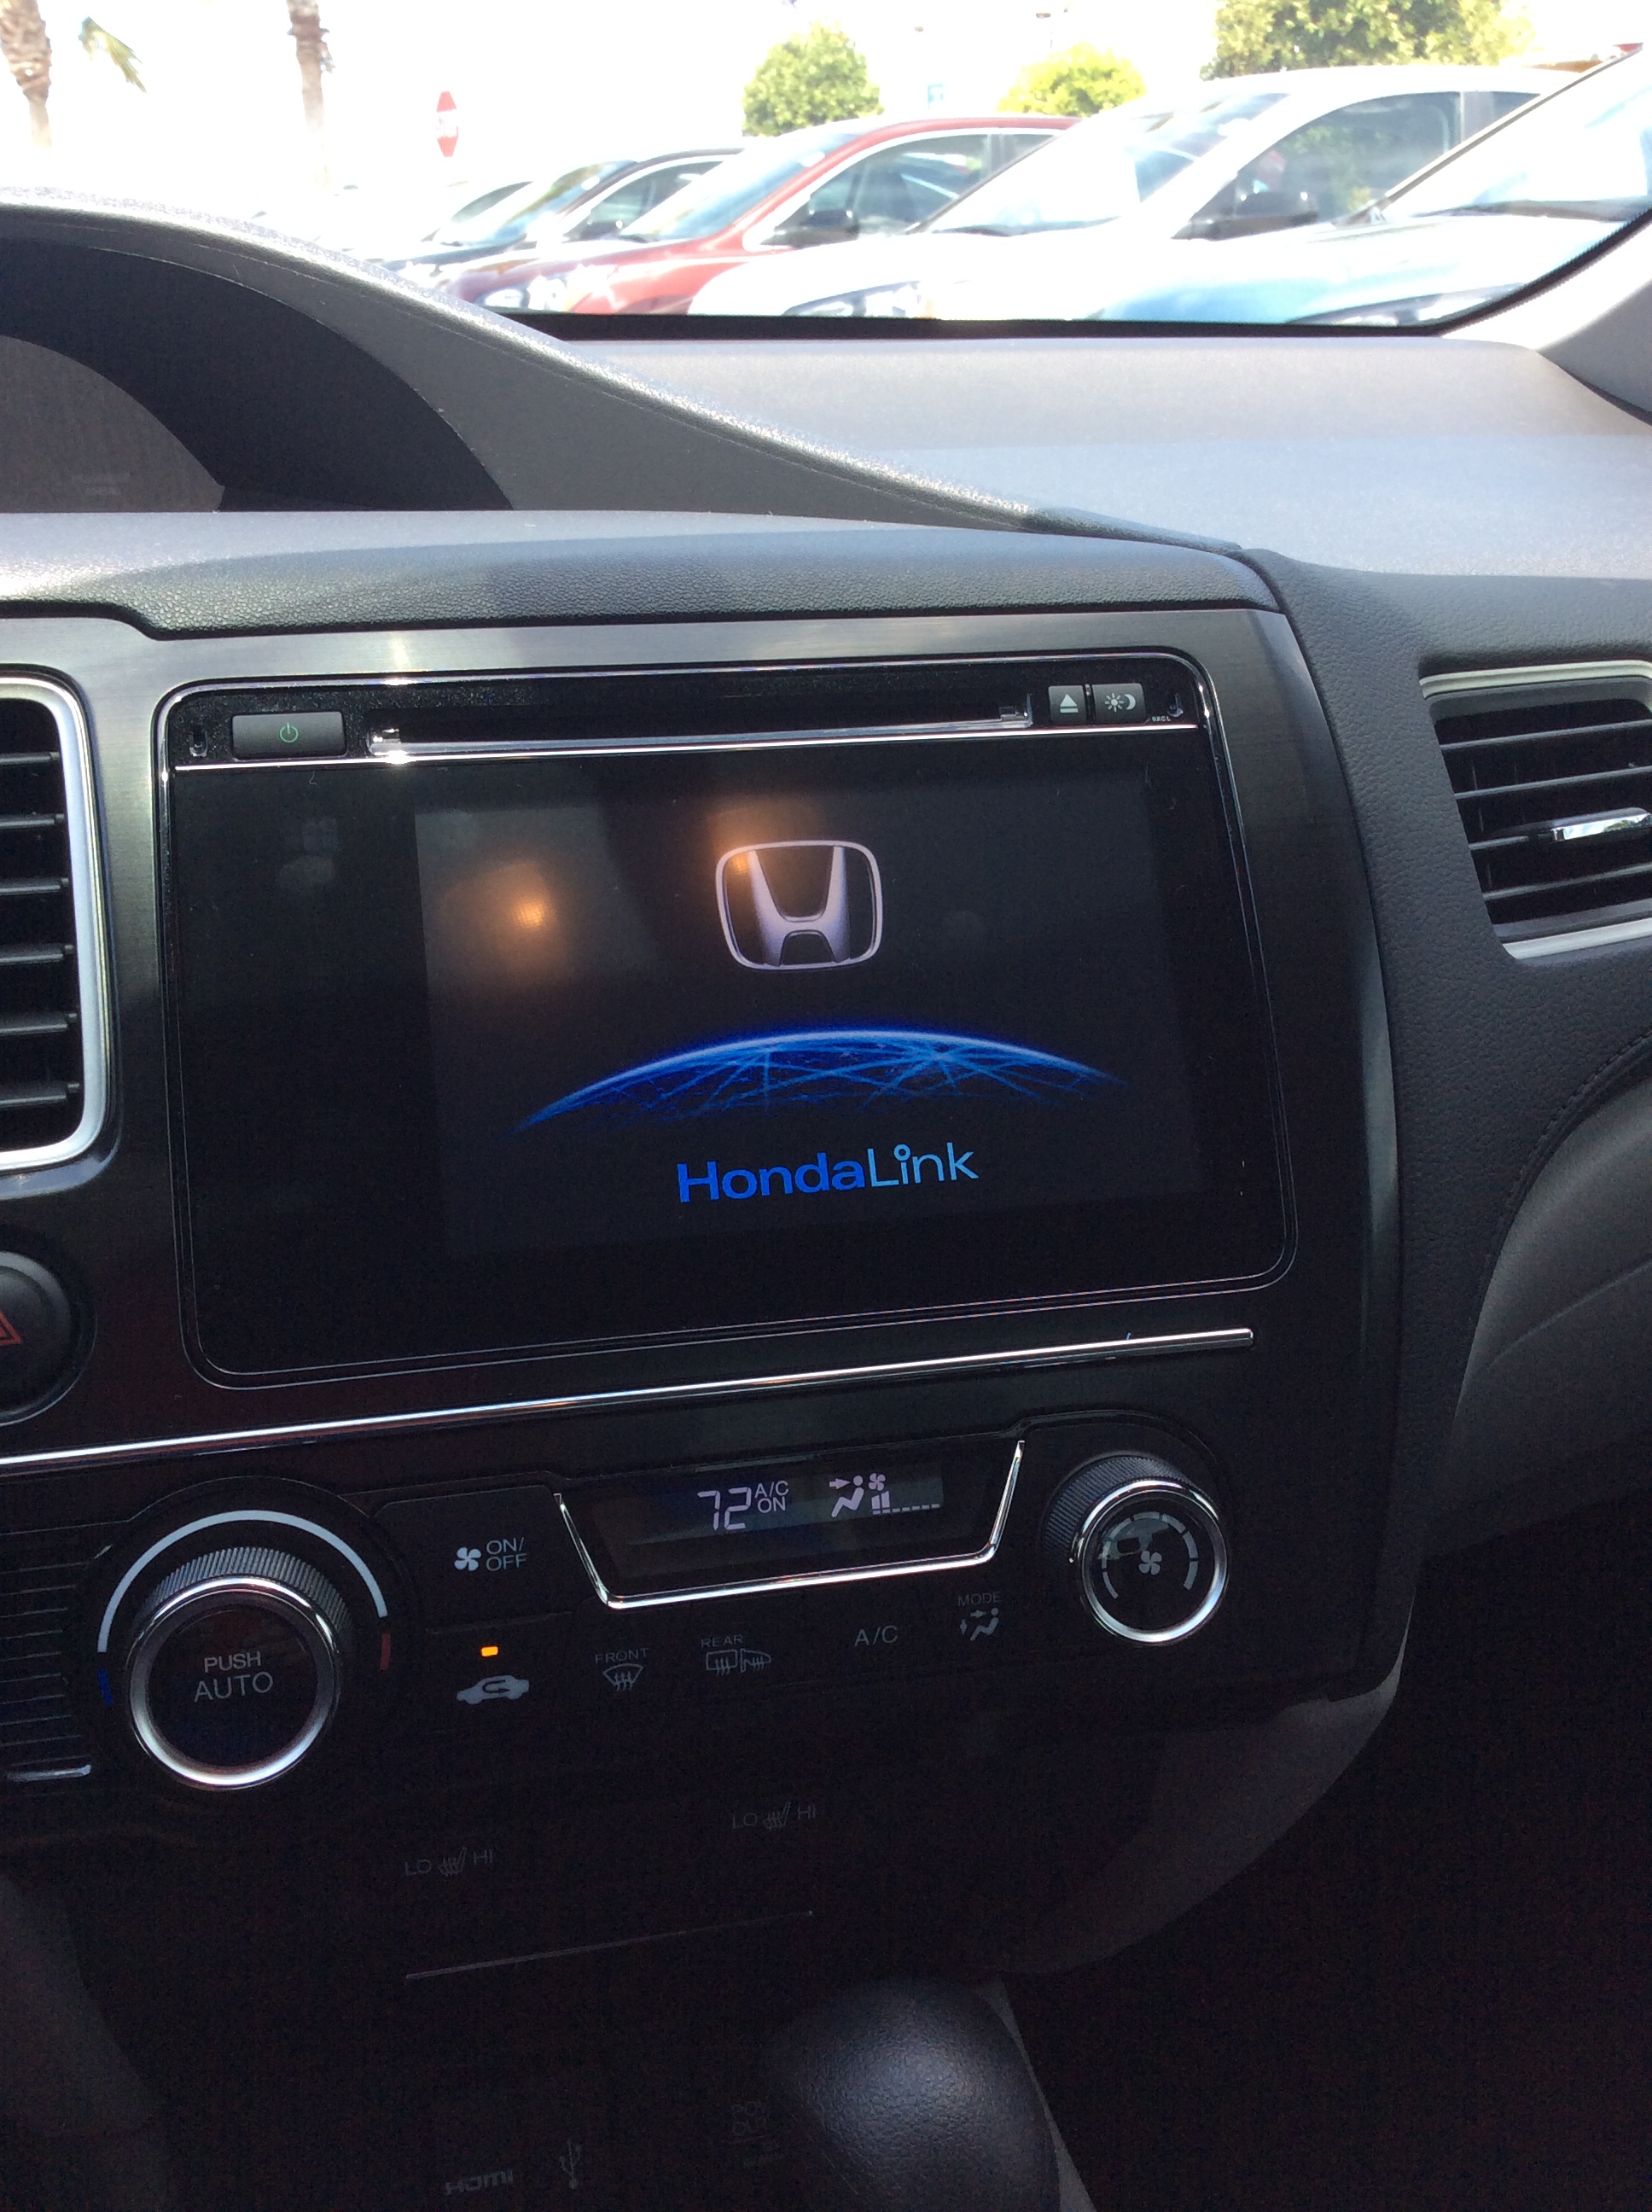 Honda crv usb interface #1